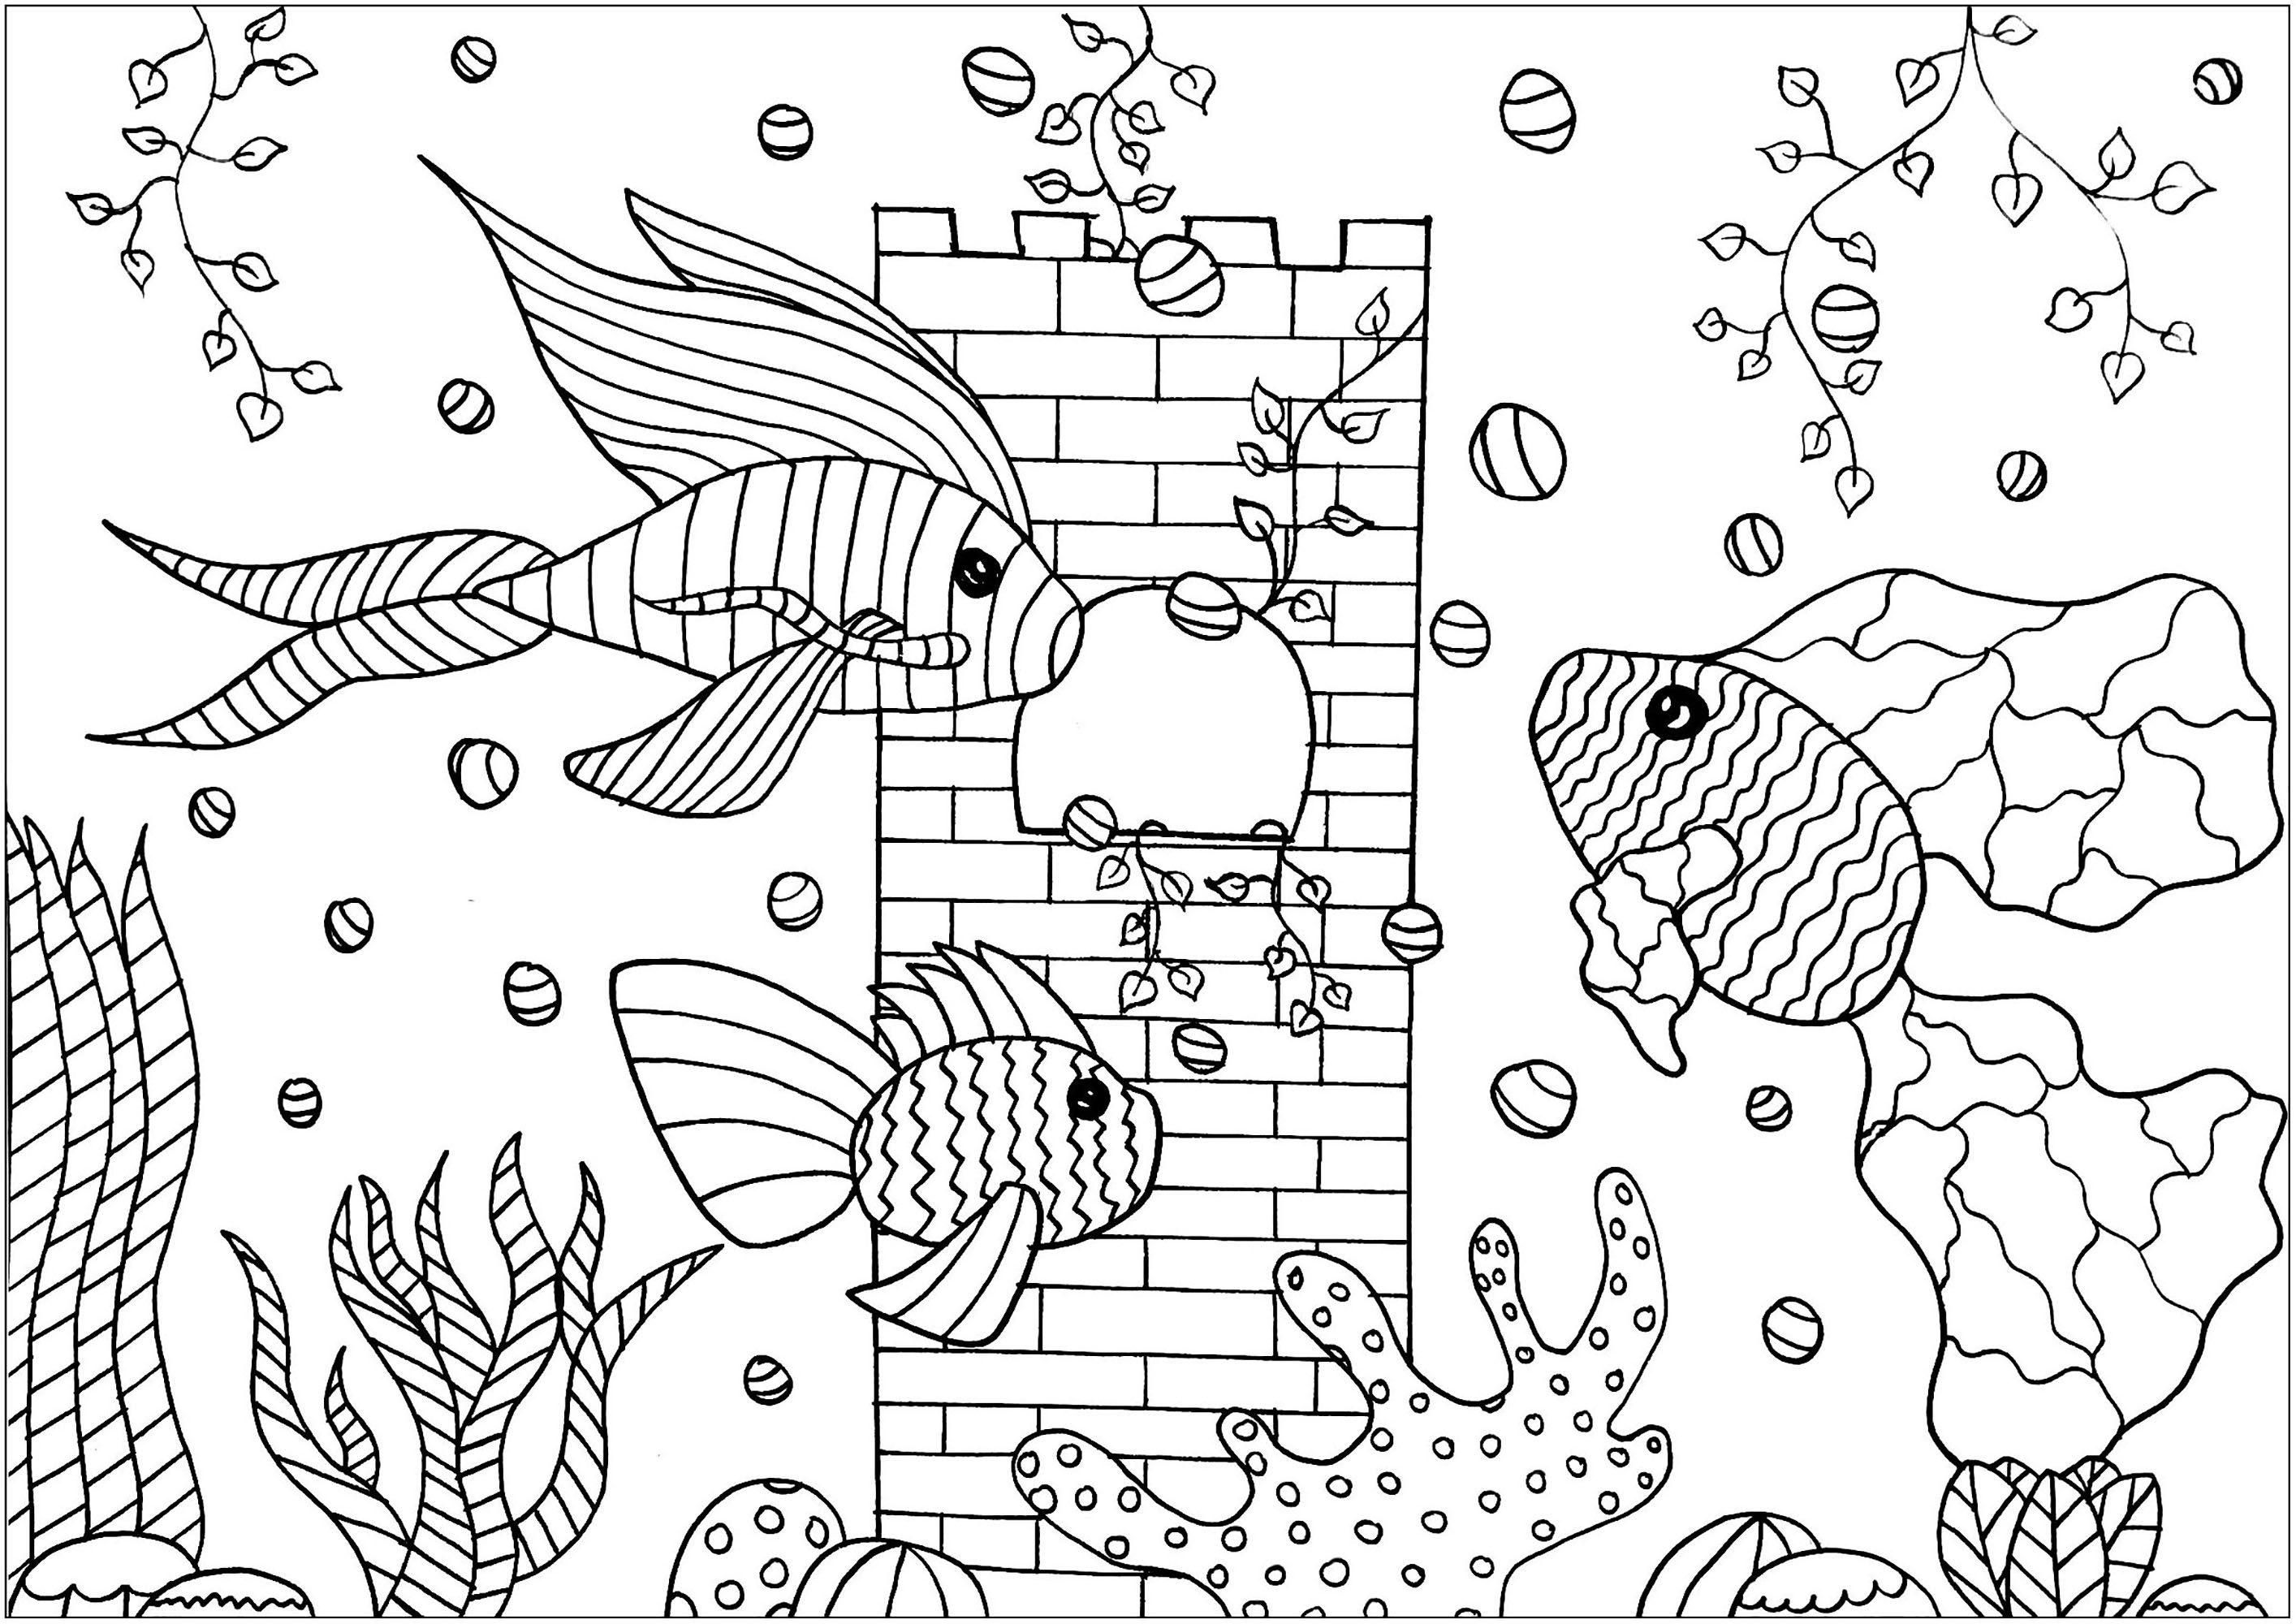 Colorea con sencillos dibujos estos Piscis que nadan en su bonito acuario, Artista : Amélie